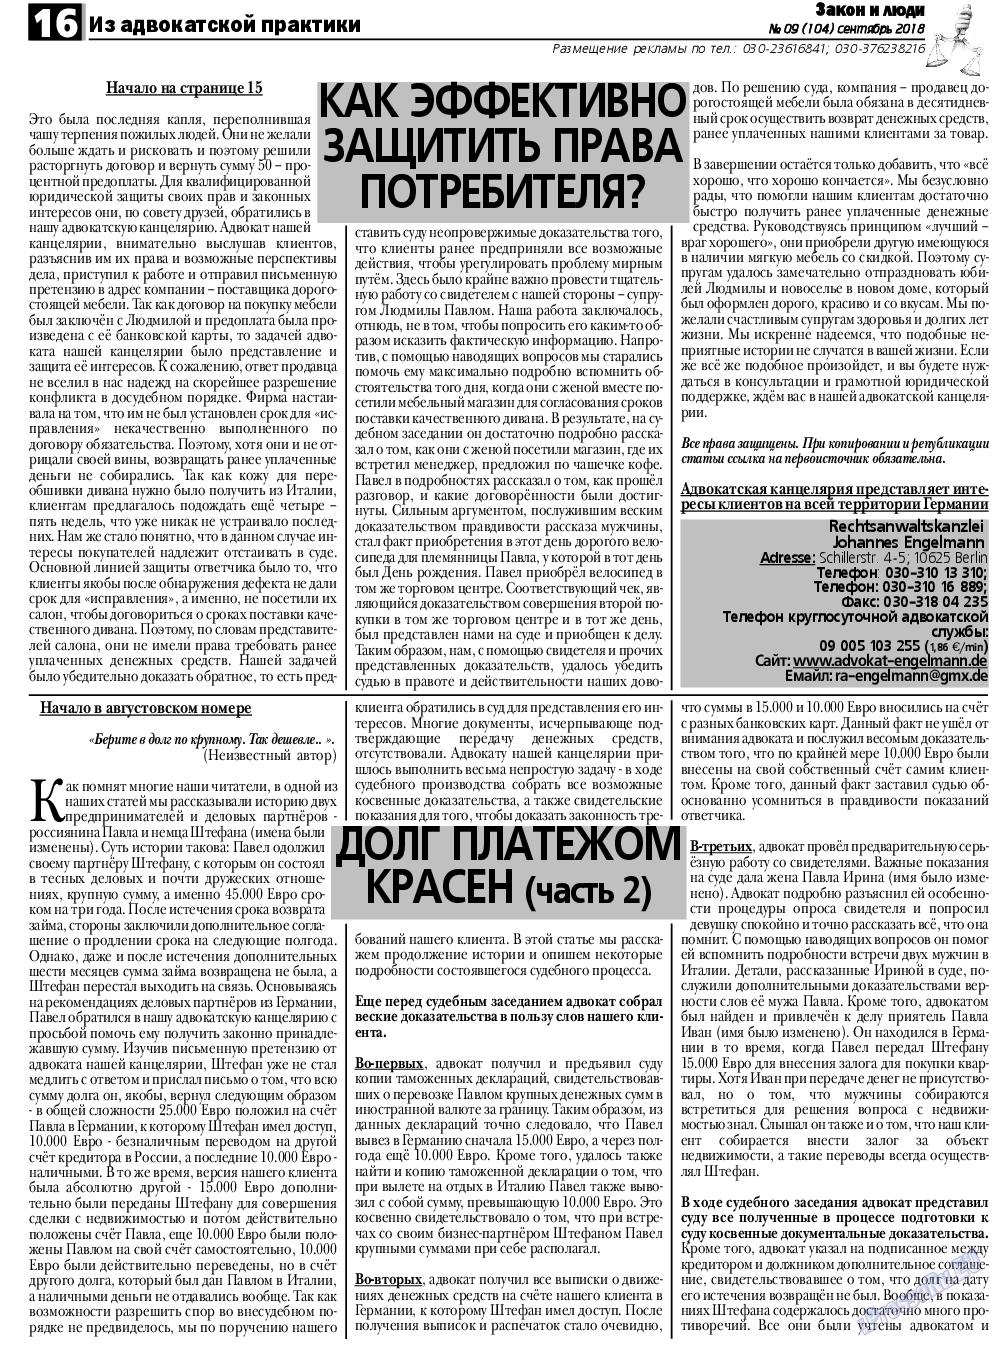 Закон и люди, газета. 2018 №9 стр.16